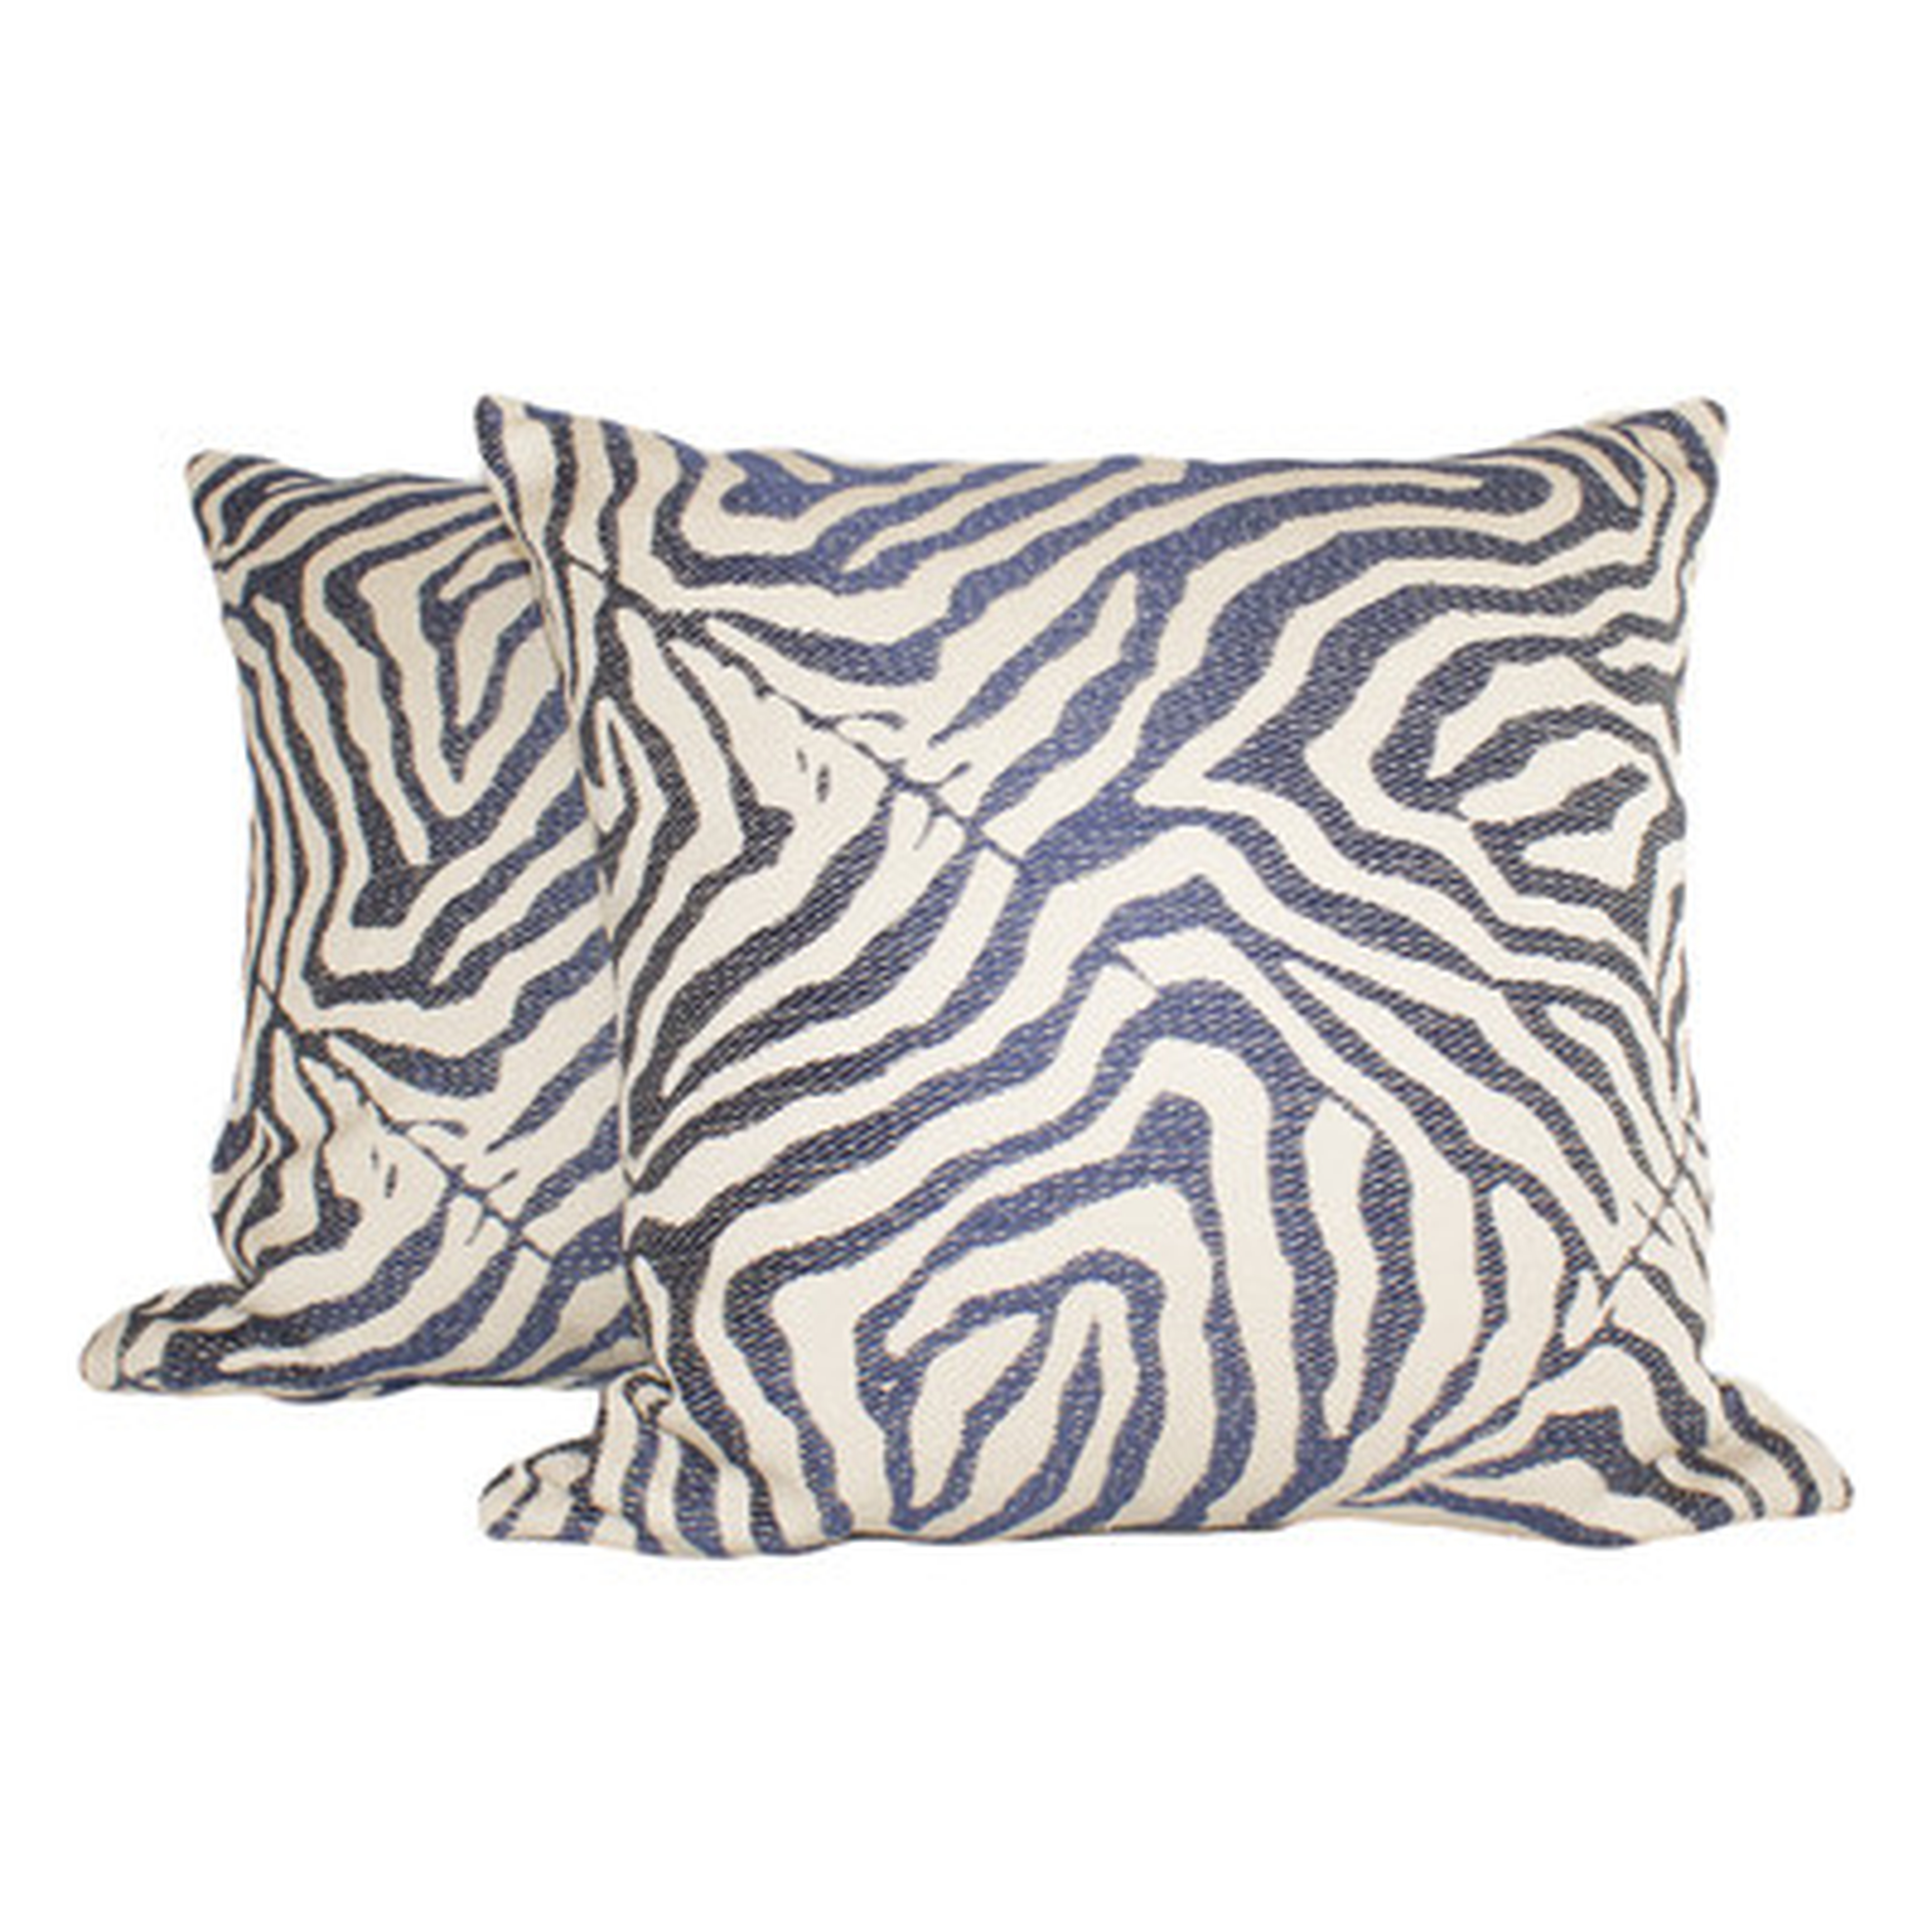 Zebra Glow Throw Pillow - set of 2 - Wayfair